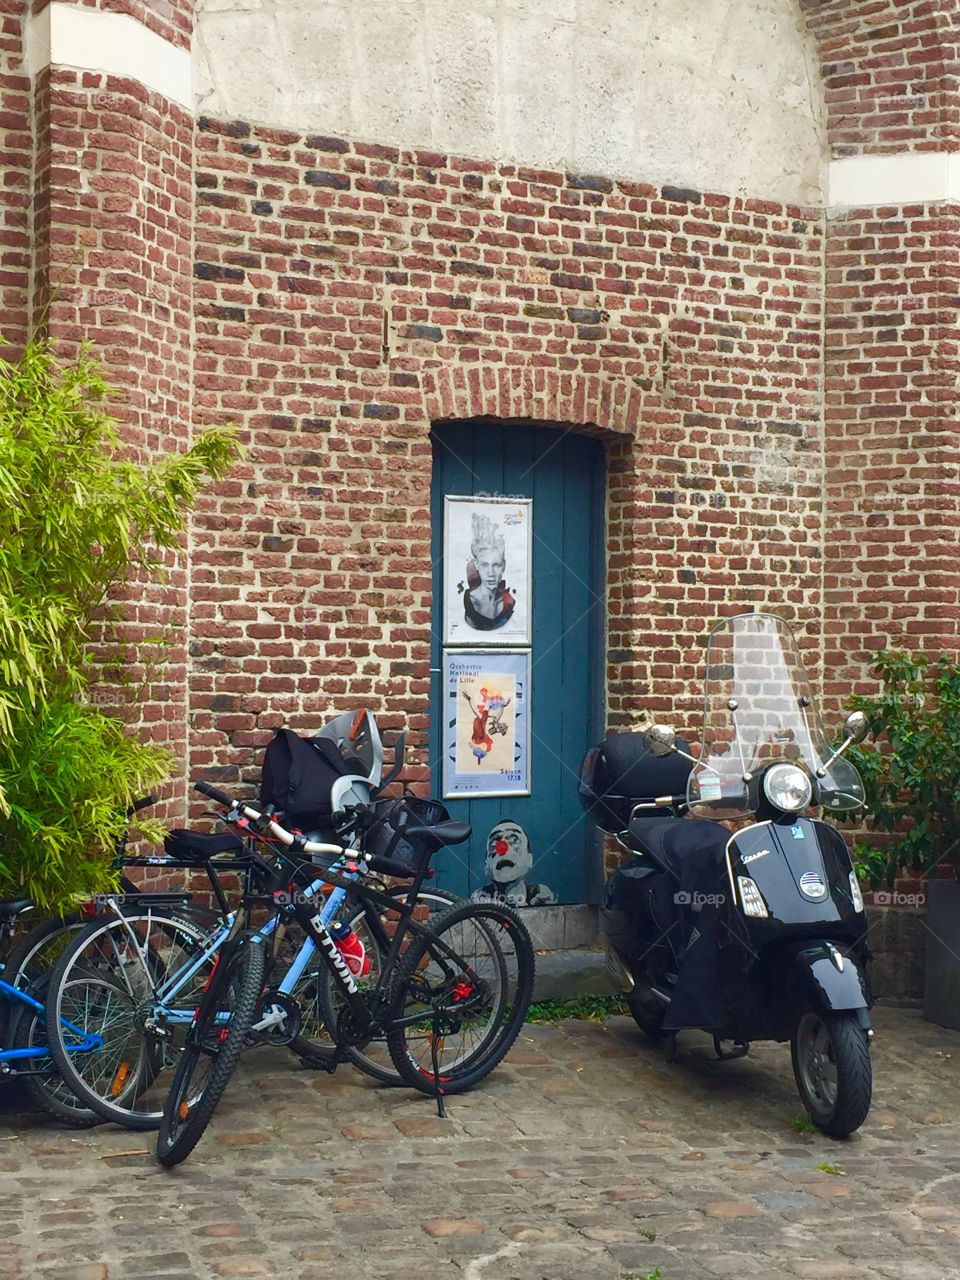 Door and bikes